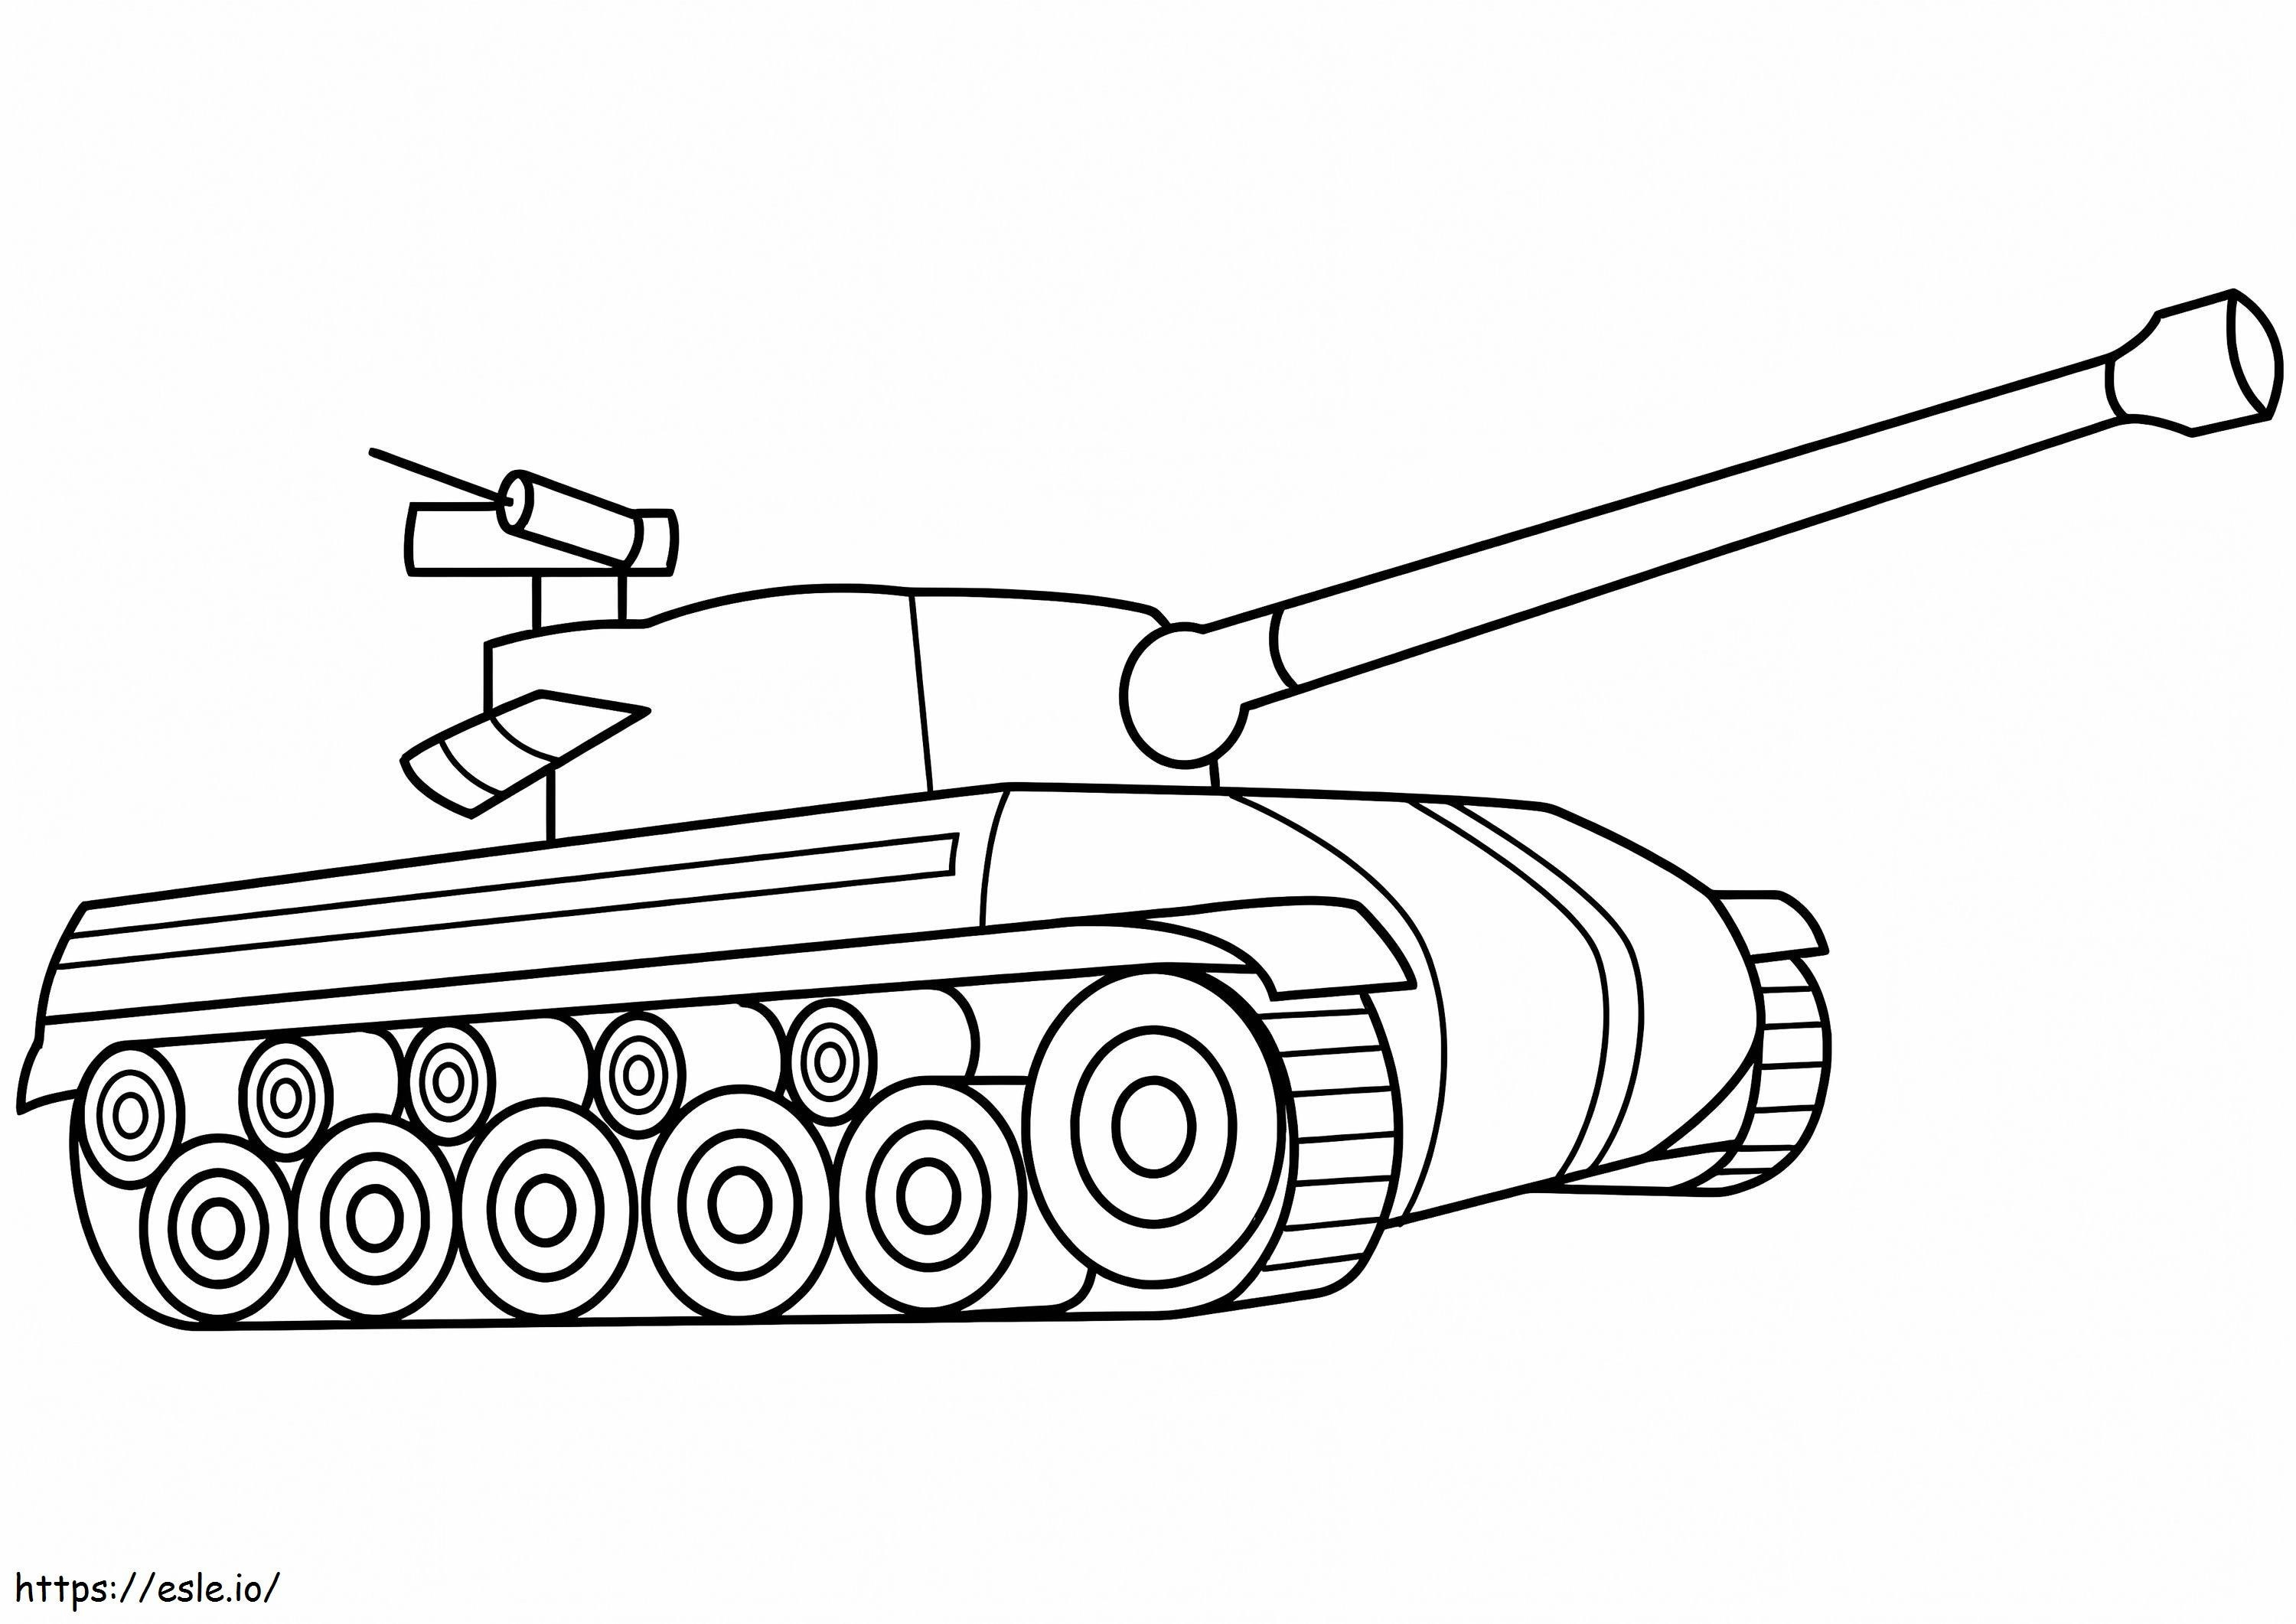 Militärpanzer 1 ausmalbilder